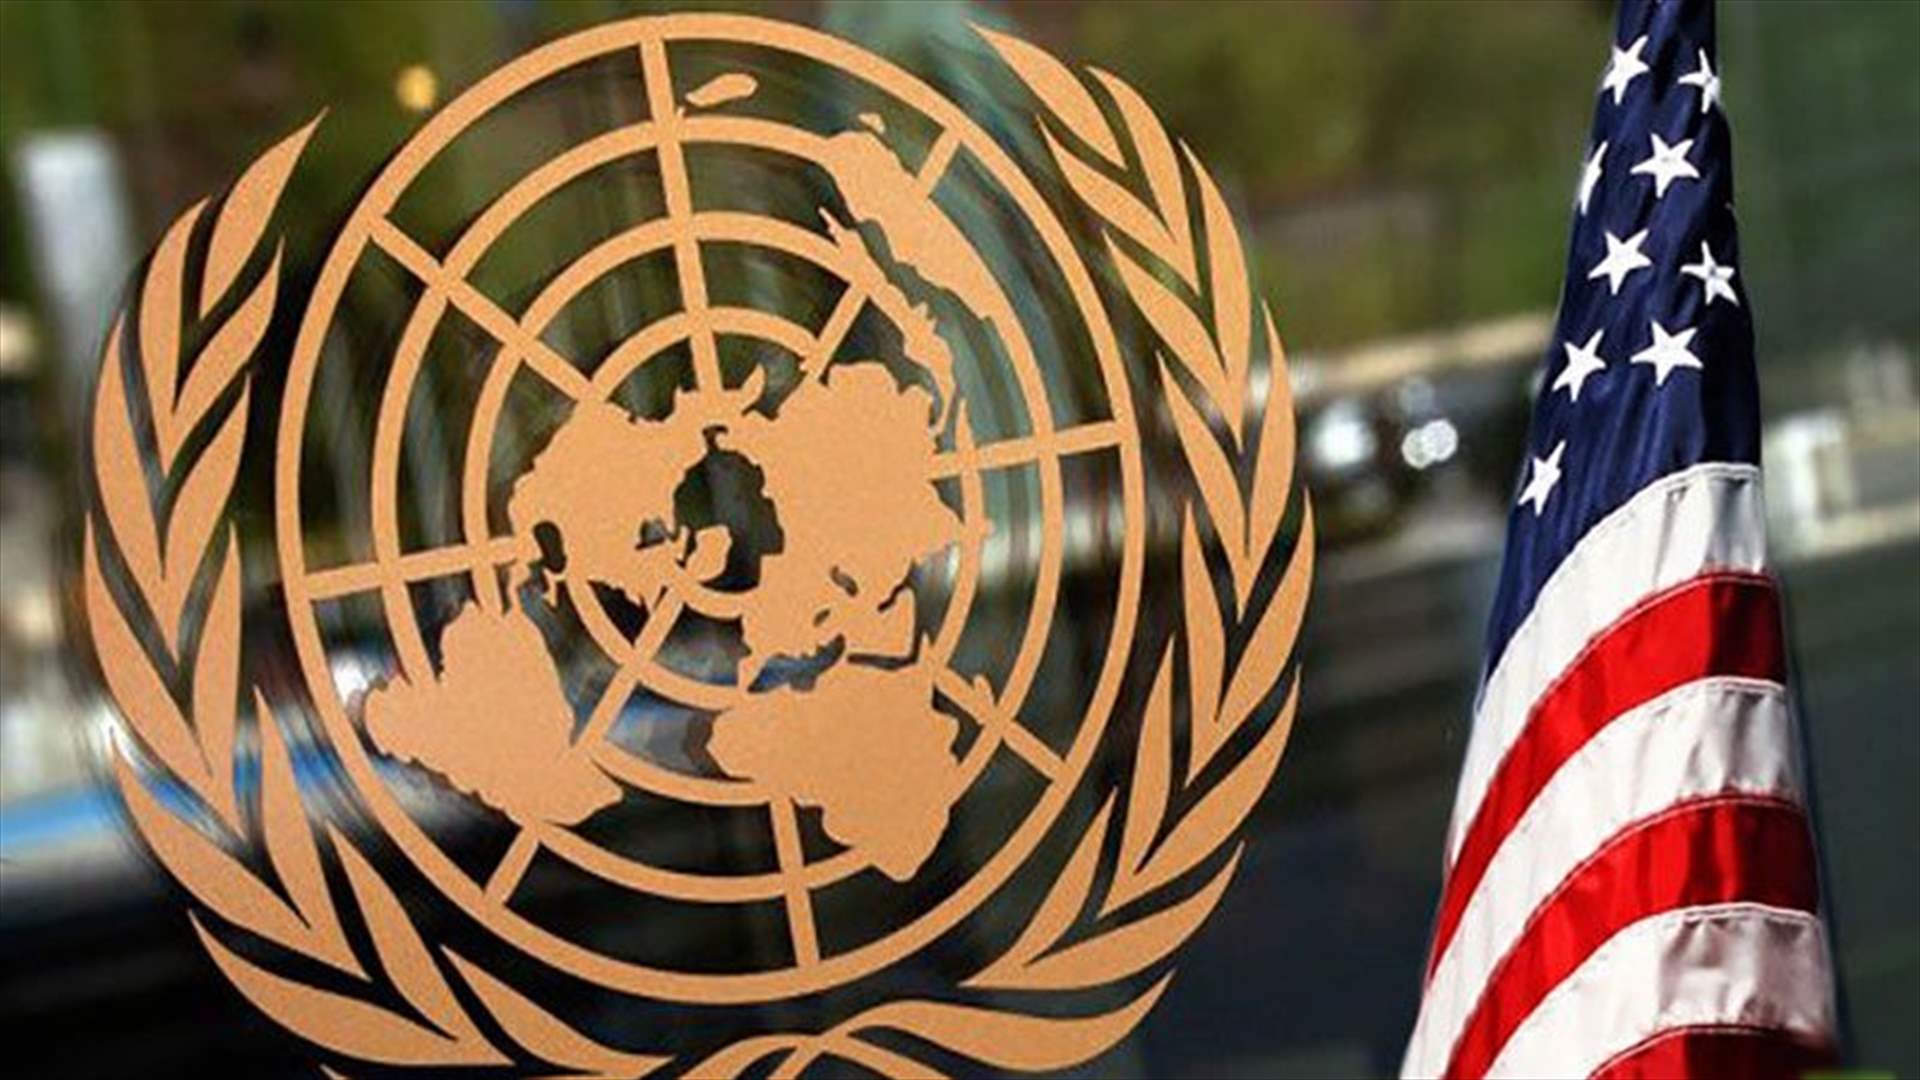 الولايات المتحدة والأمم المتحدة: المباشرة يوم غد بتطبيق برنامج دعم مادي لعناصر قوى الأمن الداخلي